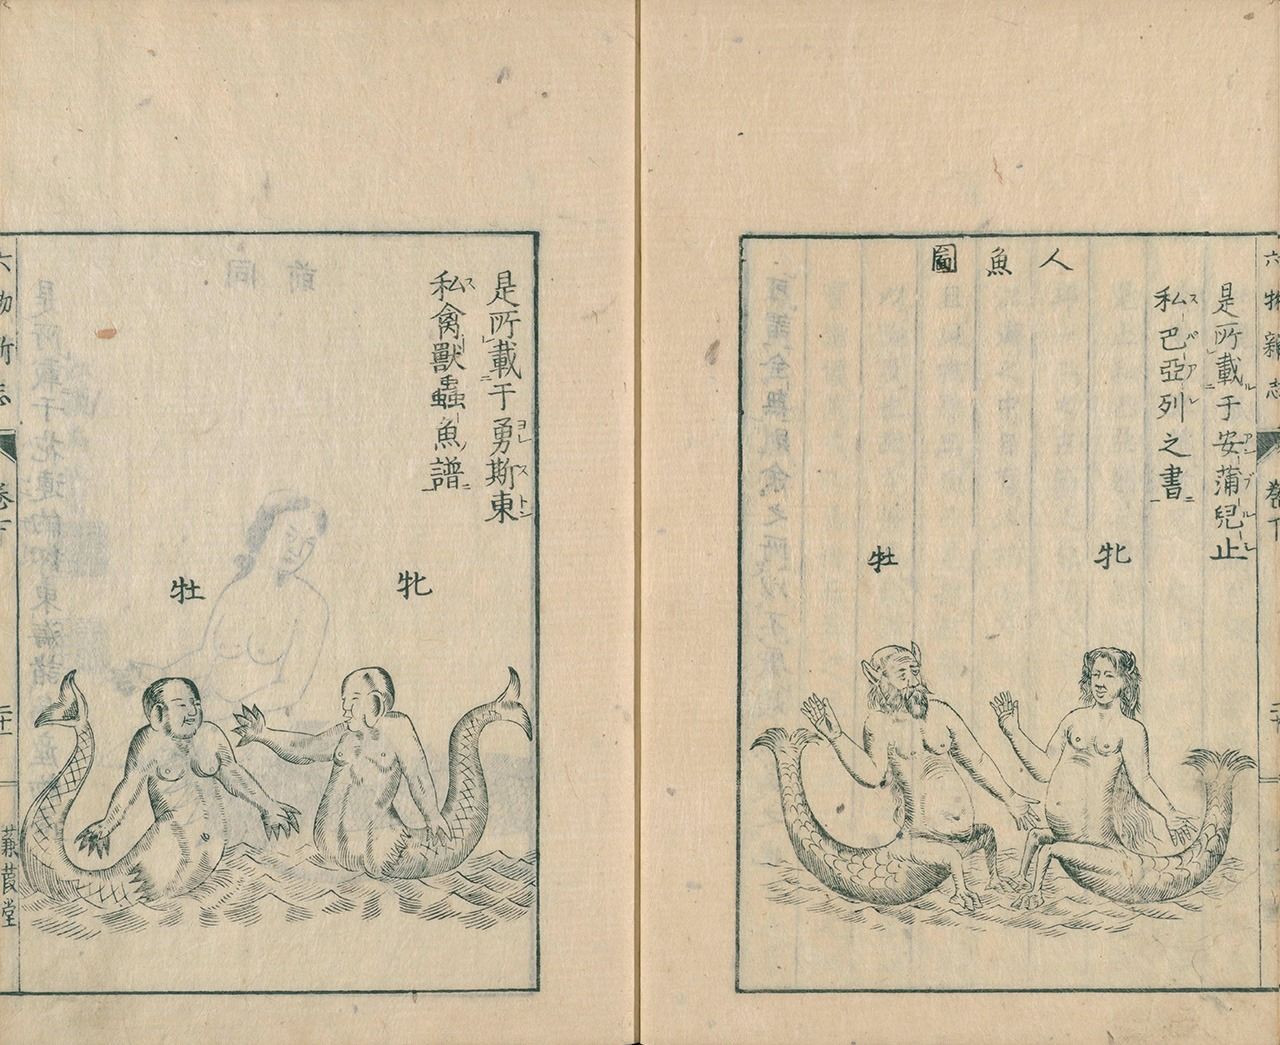 الرسوم التوضيحية لحورية البحر في روكوموتسو شينشي (استخدامات جديدة ستة أشياء)، مأخوذة من أعمال جون جونستون (على اليسار) وأمبرواز باري. (الصور مقدمة من المجموعة الرقمية لمكتبة النظام البرلمان الوطني)